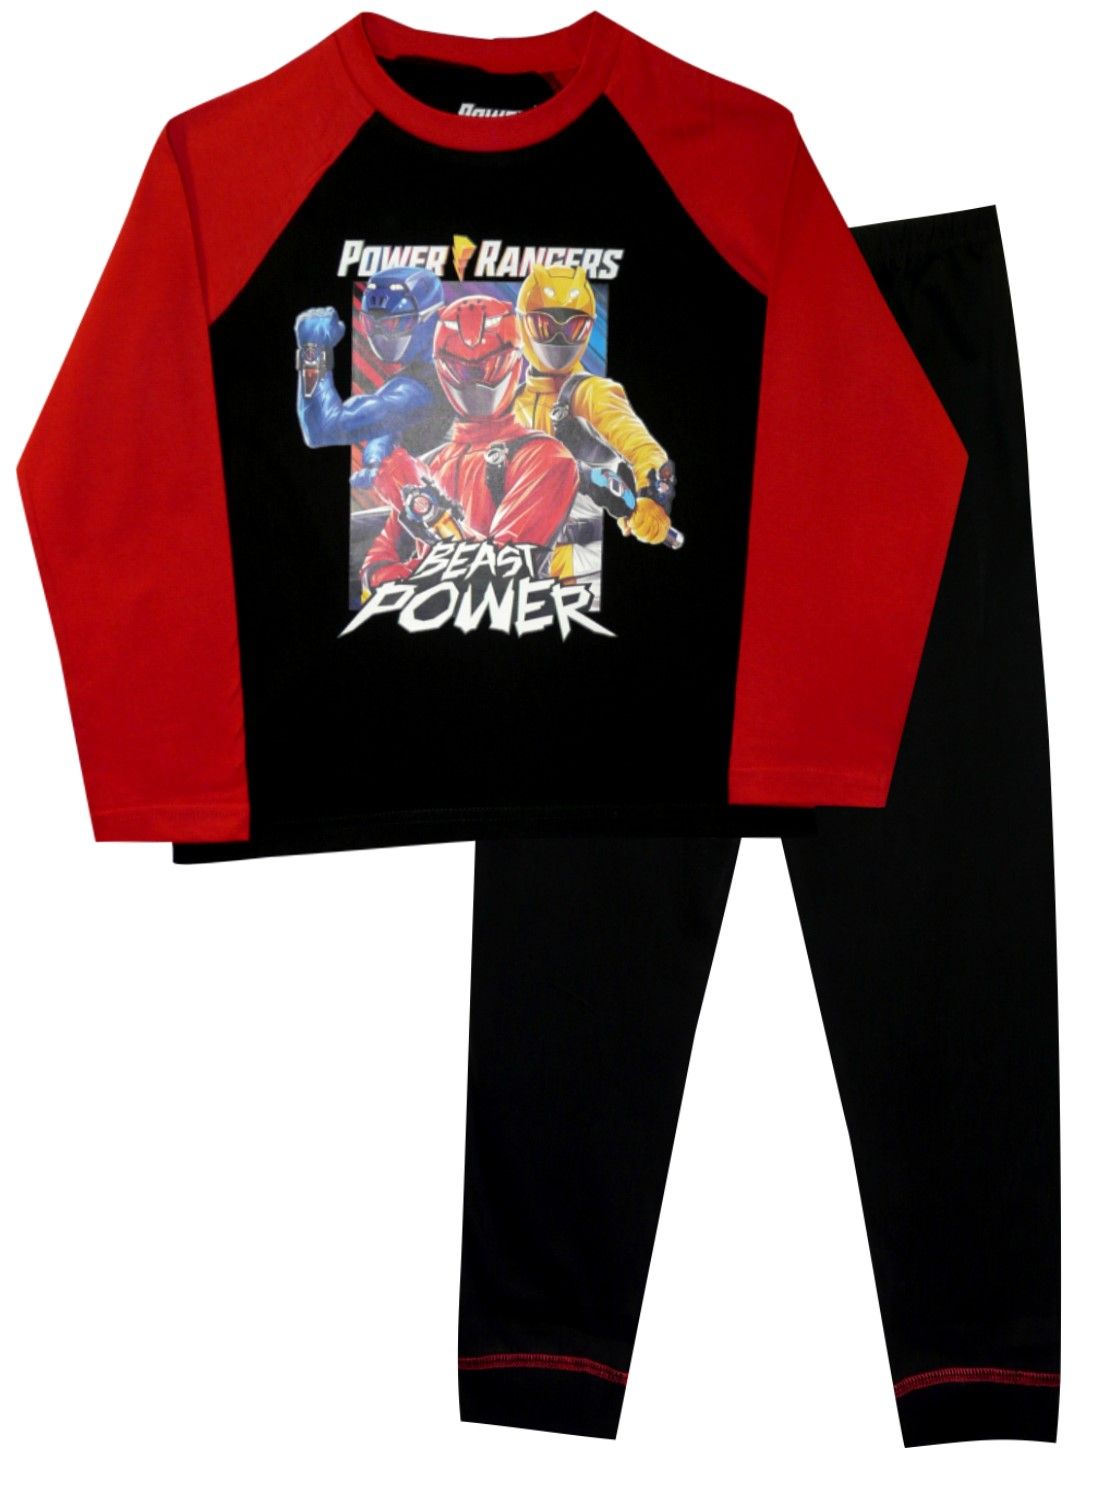 Power Rangers "Beast Power" Boys Pyjamas